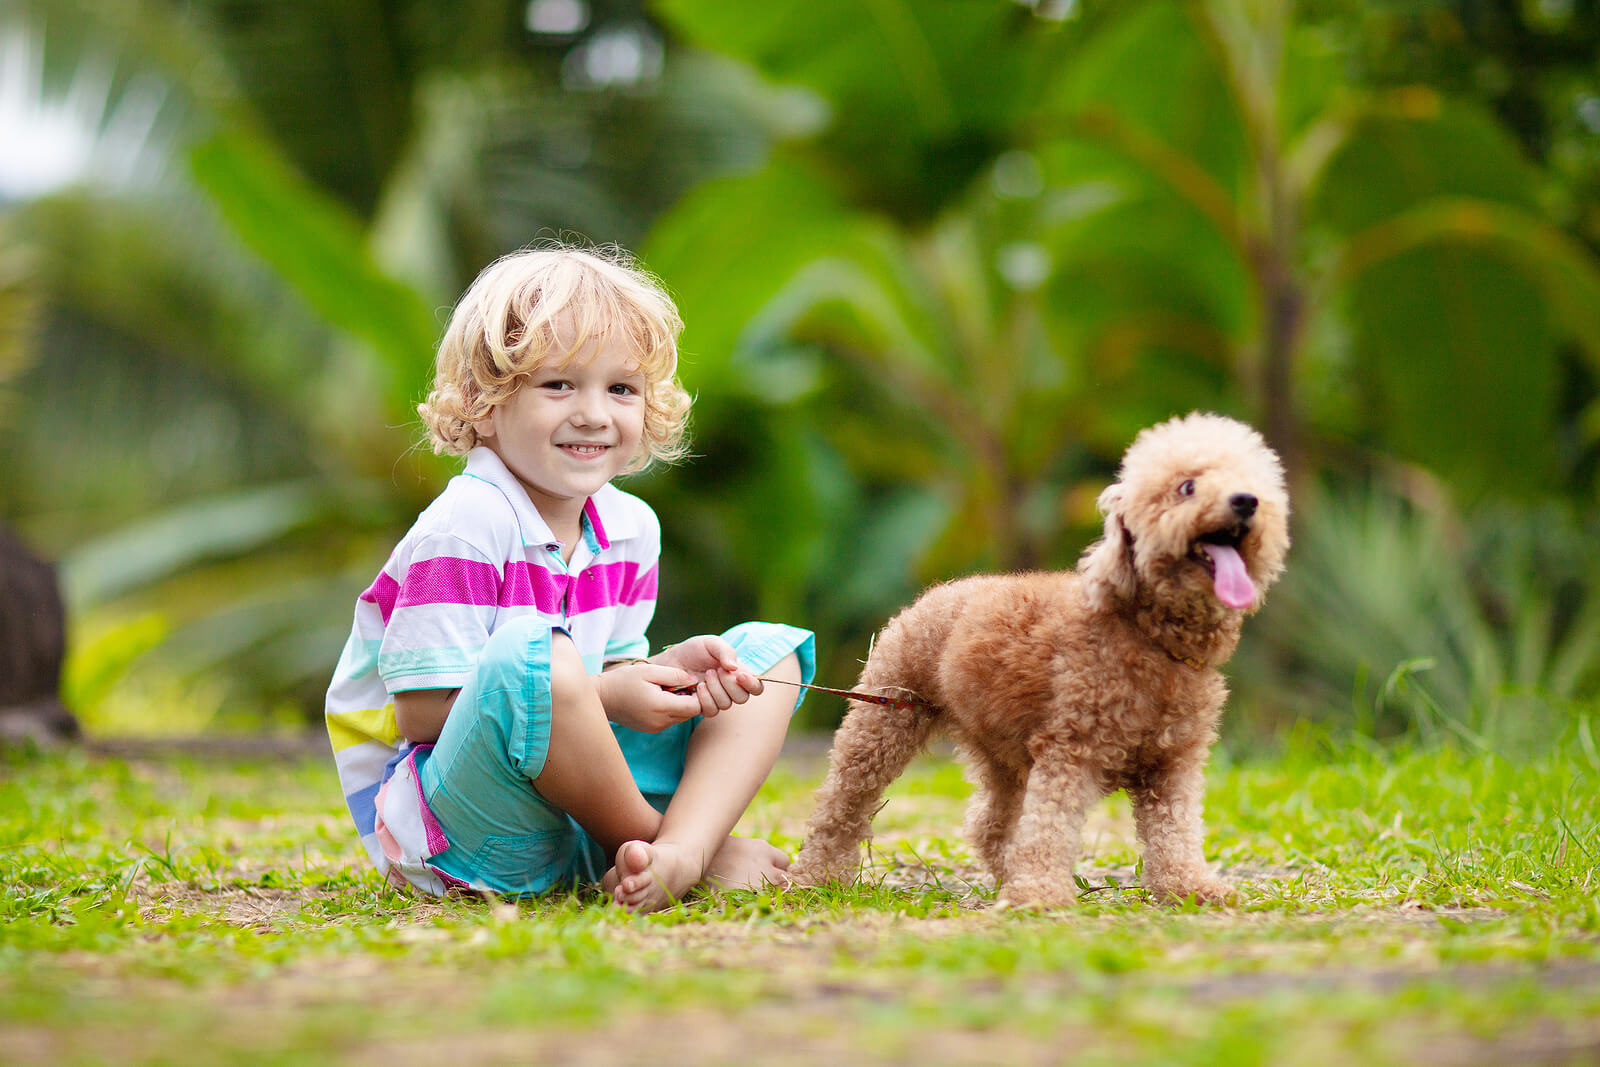 Niño alegre paseando al perro, pues la alegría es uno de los estados de ánimo que favorecen el aprendizaje.